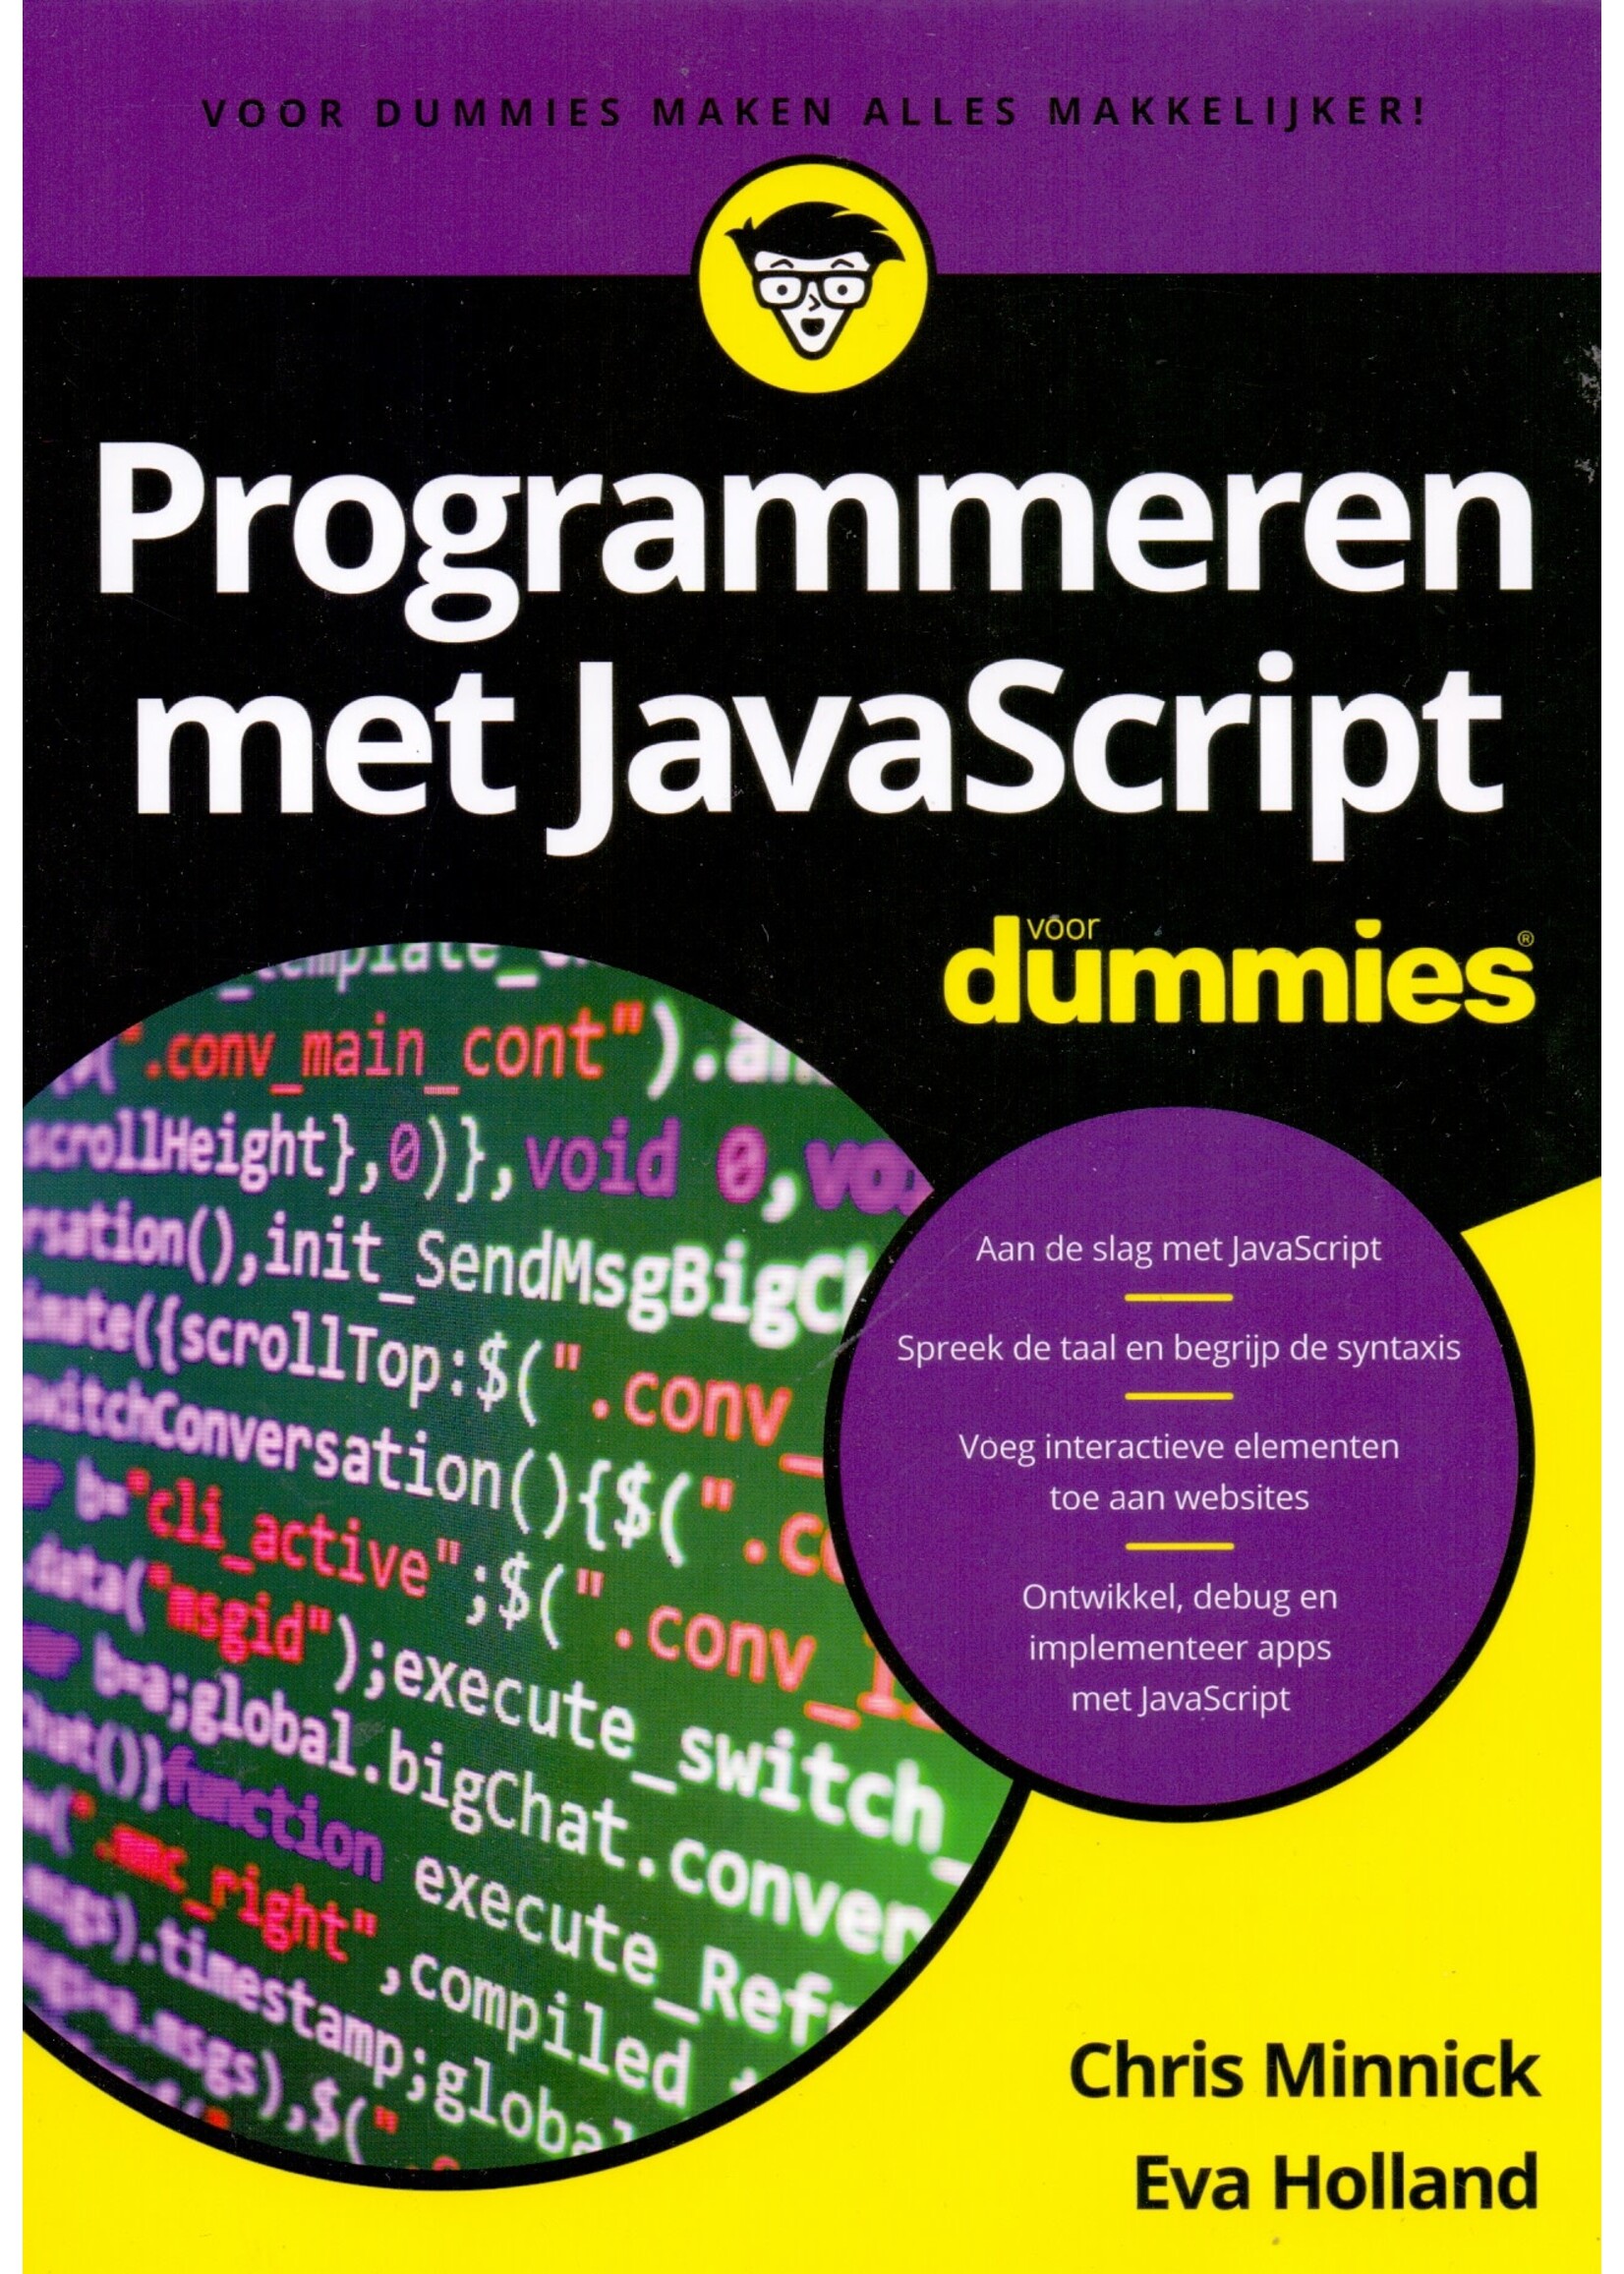 Boek Programmeren met JavaScript voor Dummies, Chris Minnick, Eva Holland, voor Dummies, BBNC Uitgevers, 9789045353722